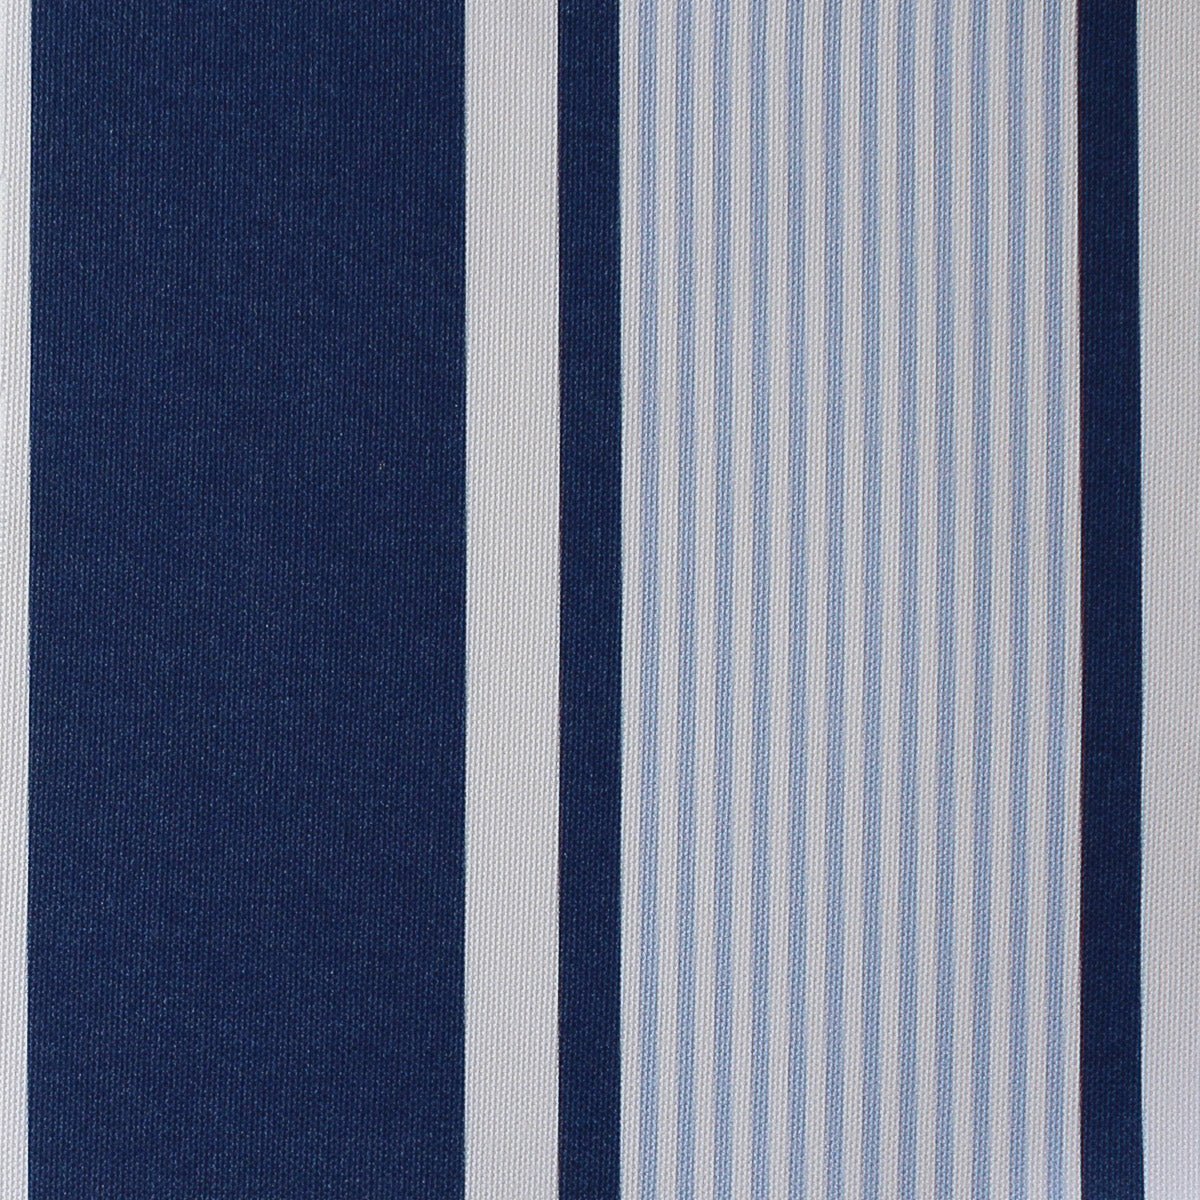 Deckchair Stripe Multi Fabric - Navy-Cornflower - Hydrangea Lane Home